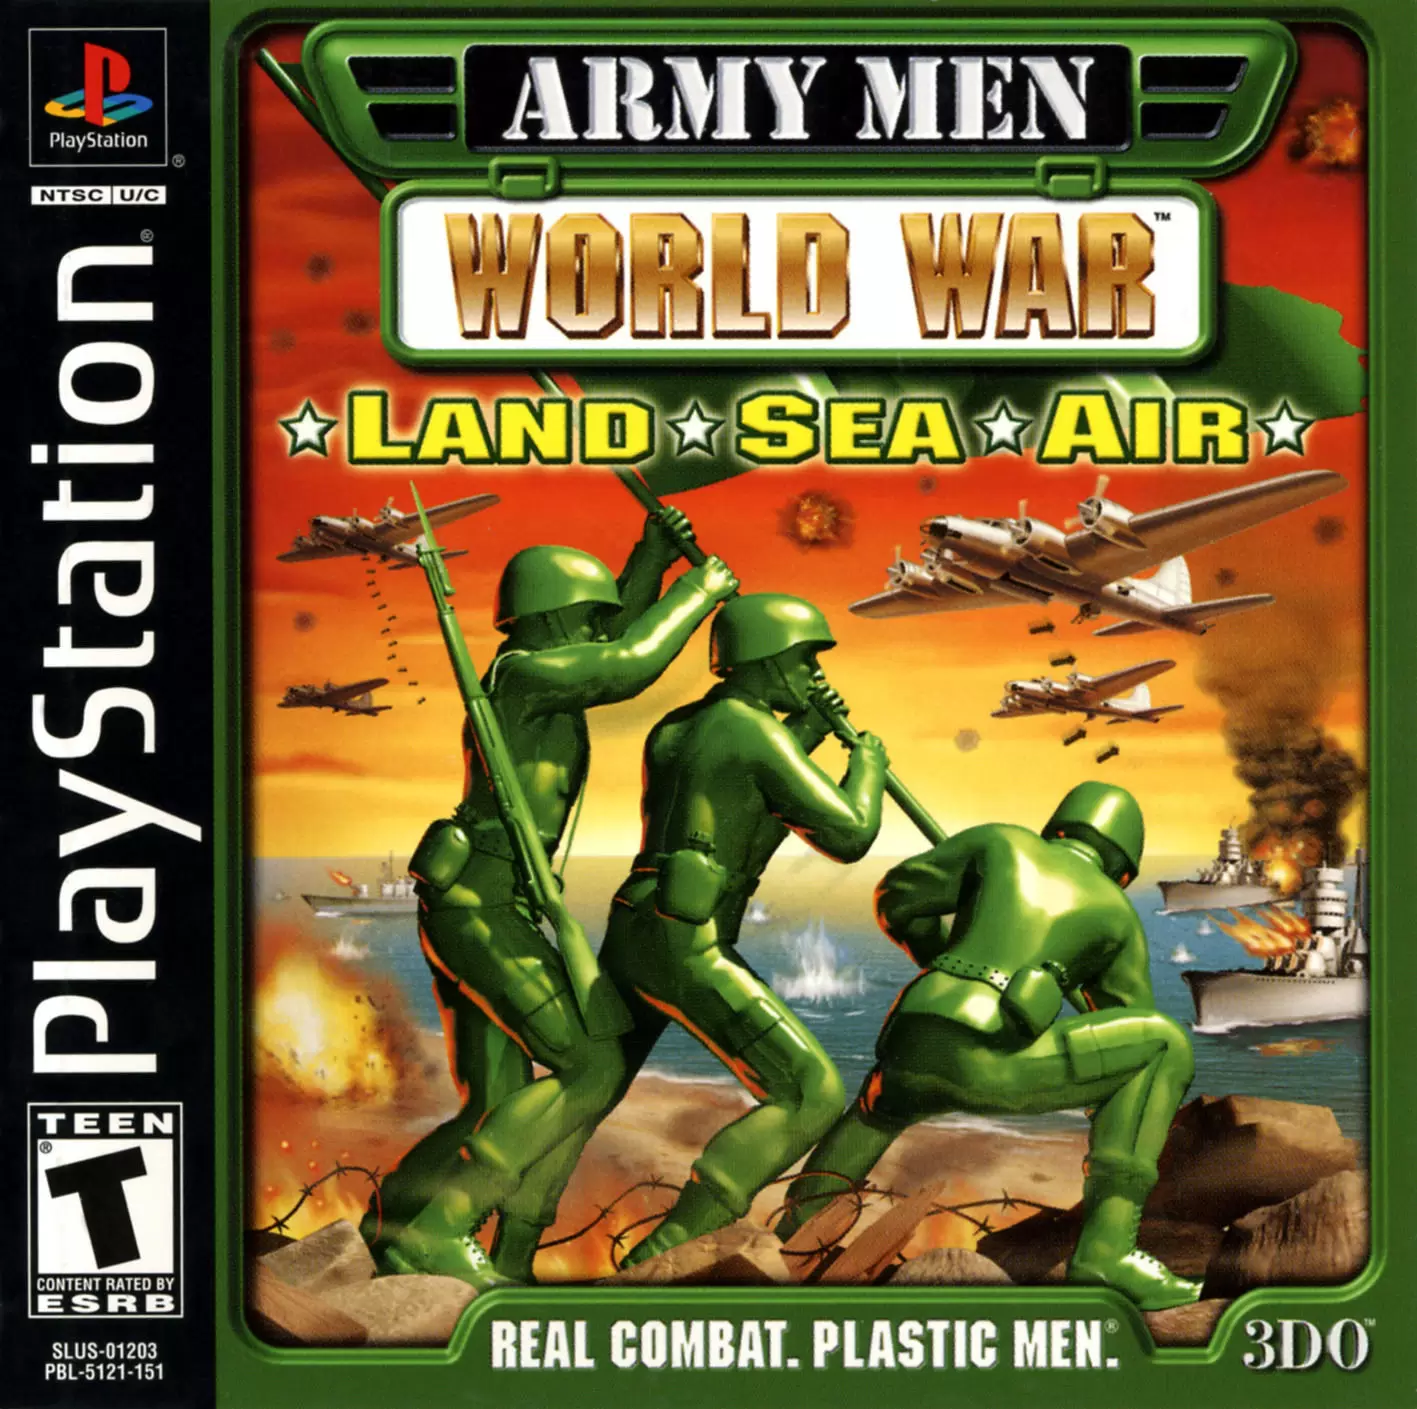 Playstation games - Army Men: World War - Land Sea Air